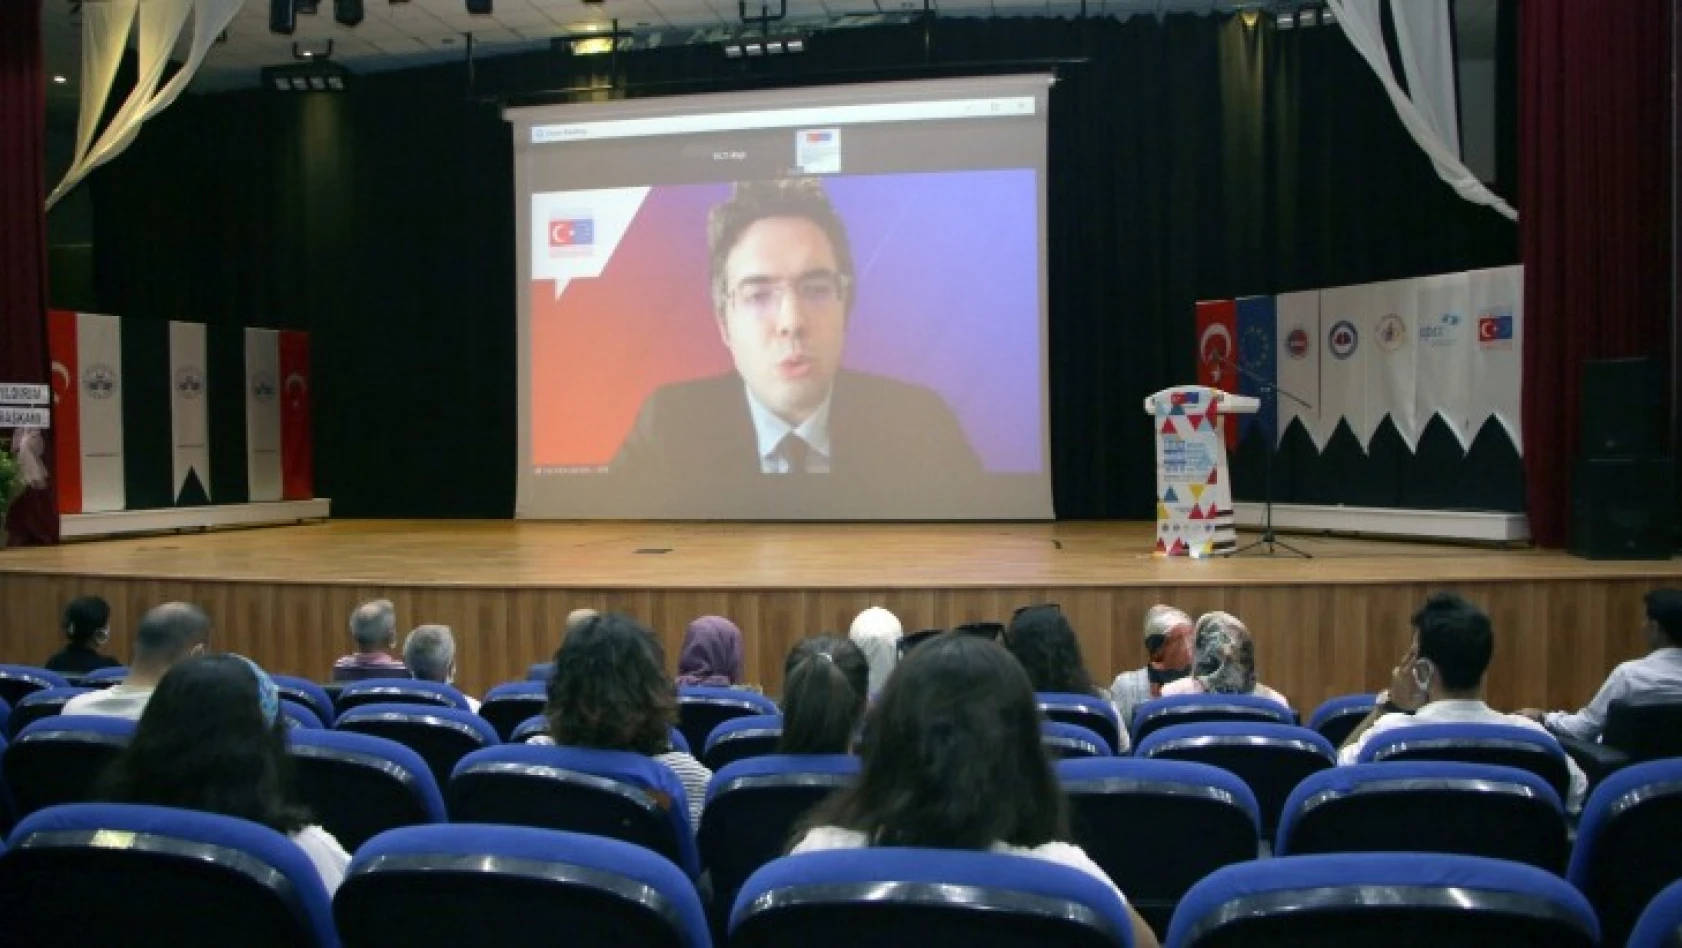 Elazığ'da  ''Görünmezi Görünür Kıl'' projesi  açılış toplantısı yapıldı.